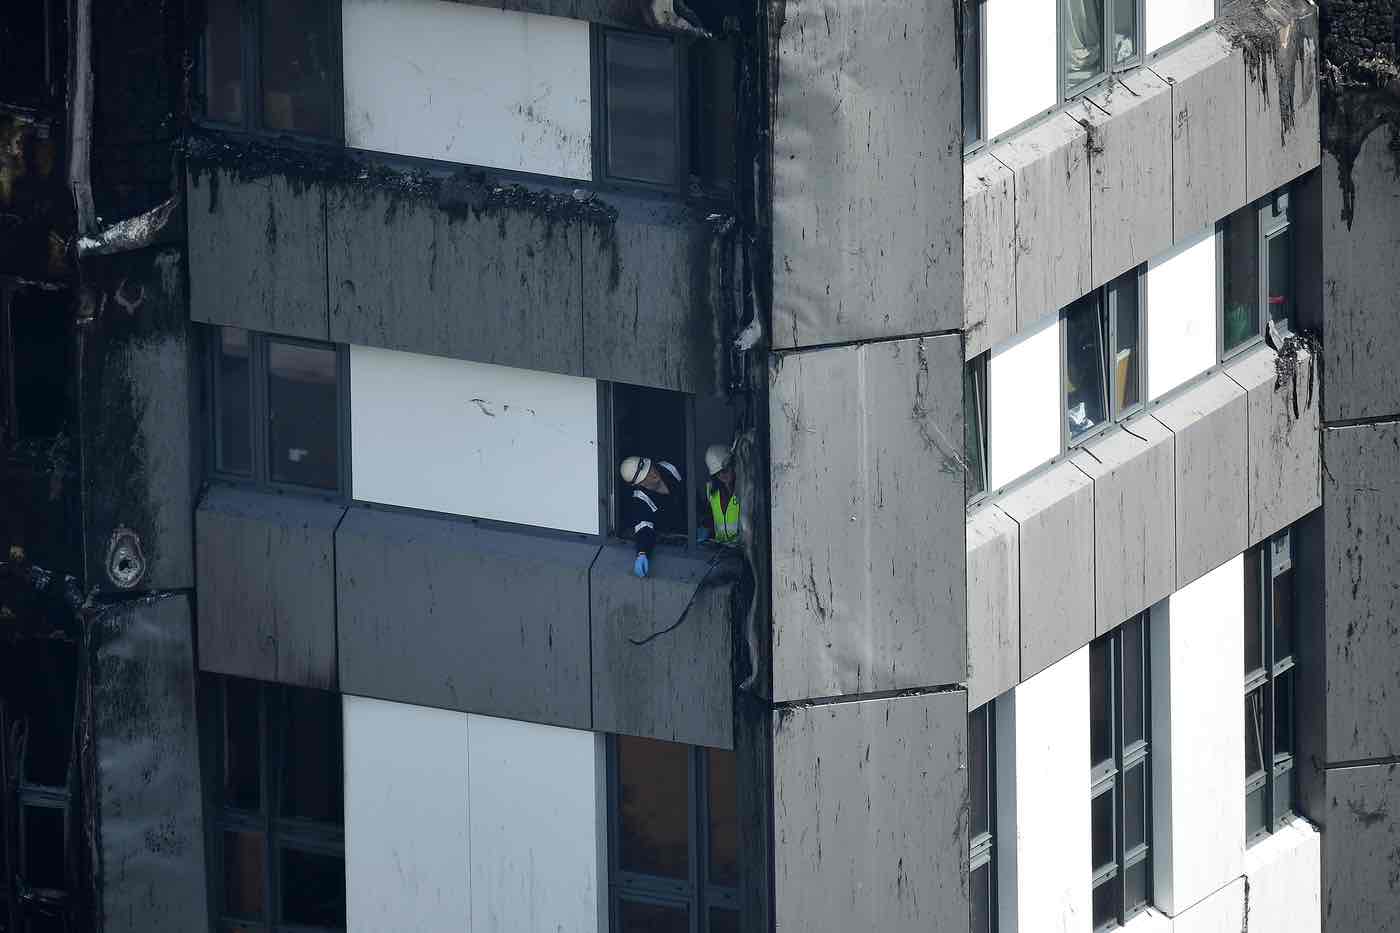 Tòa nhà Grenfell Tower sau khi cháy - ẢNh: Getty Images